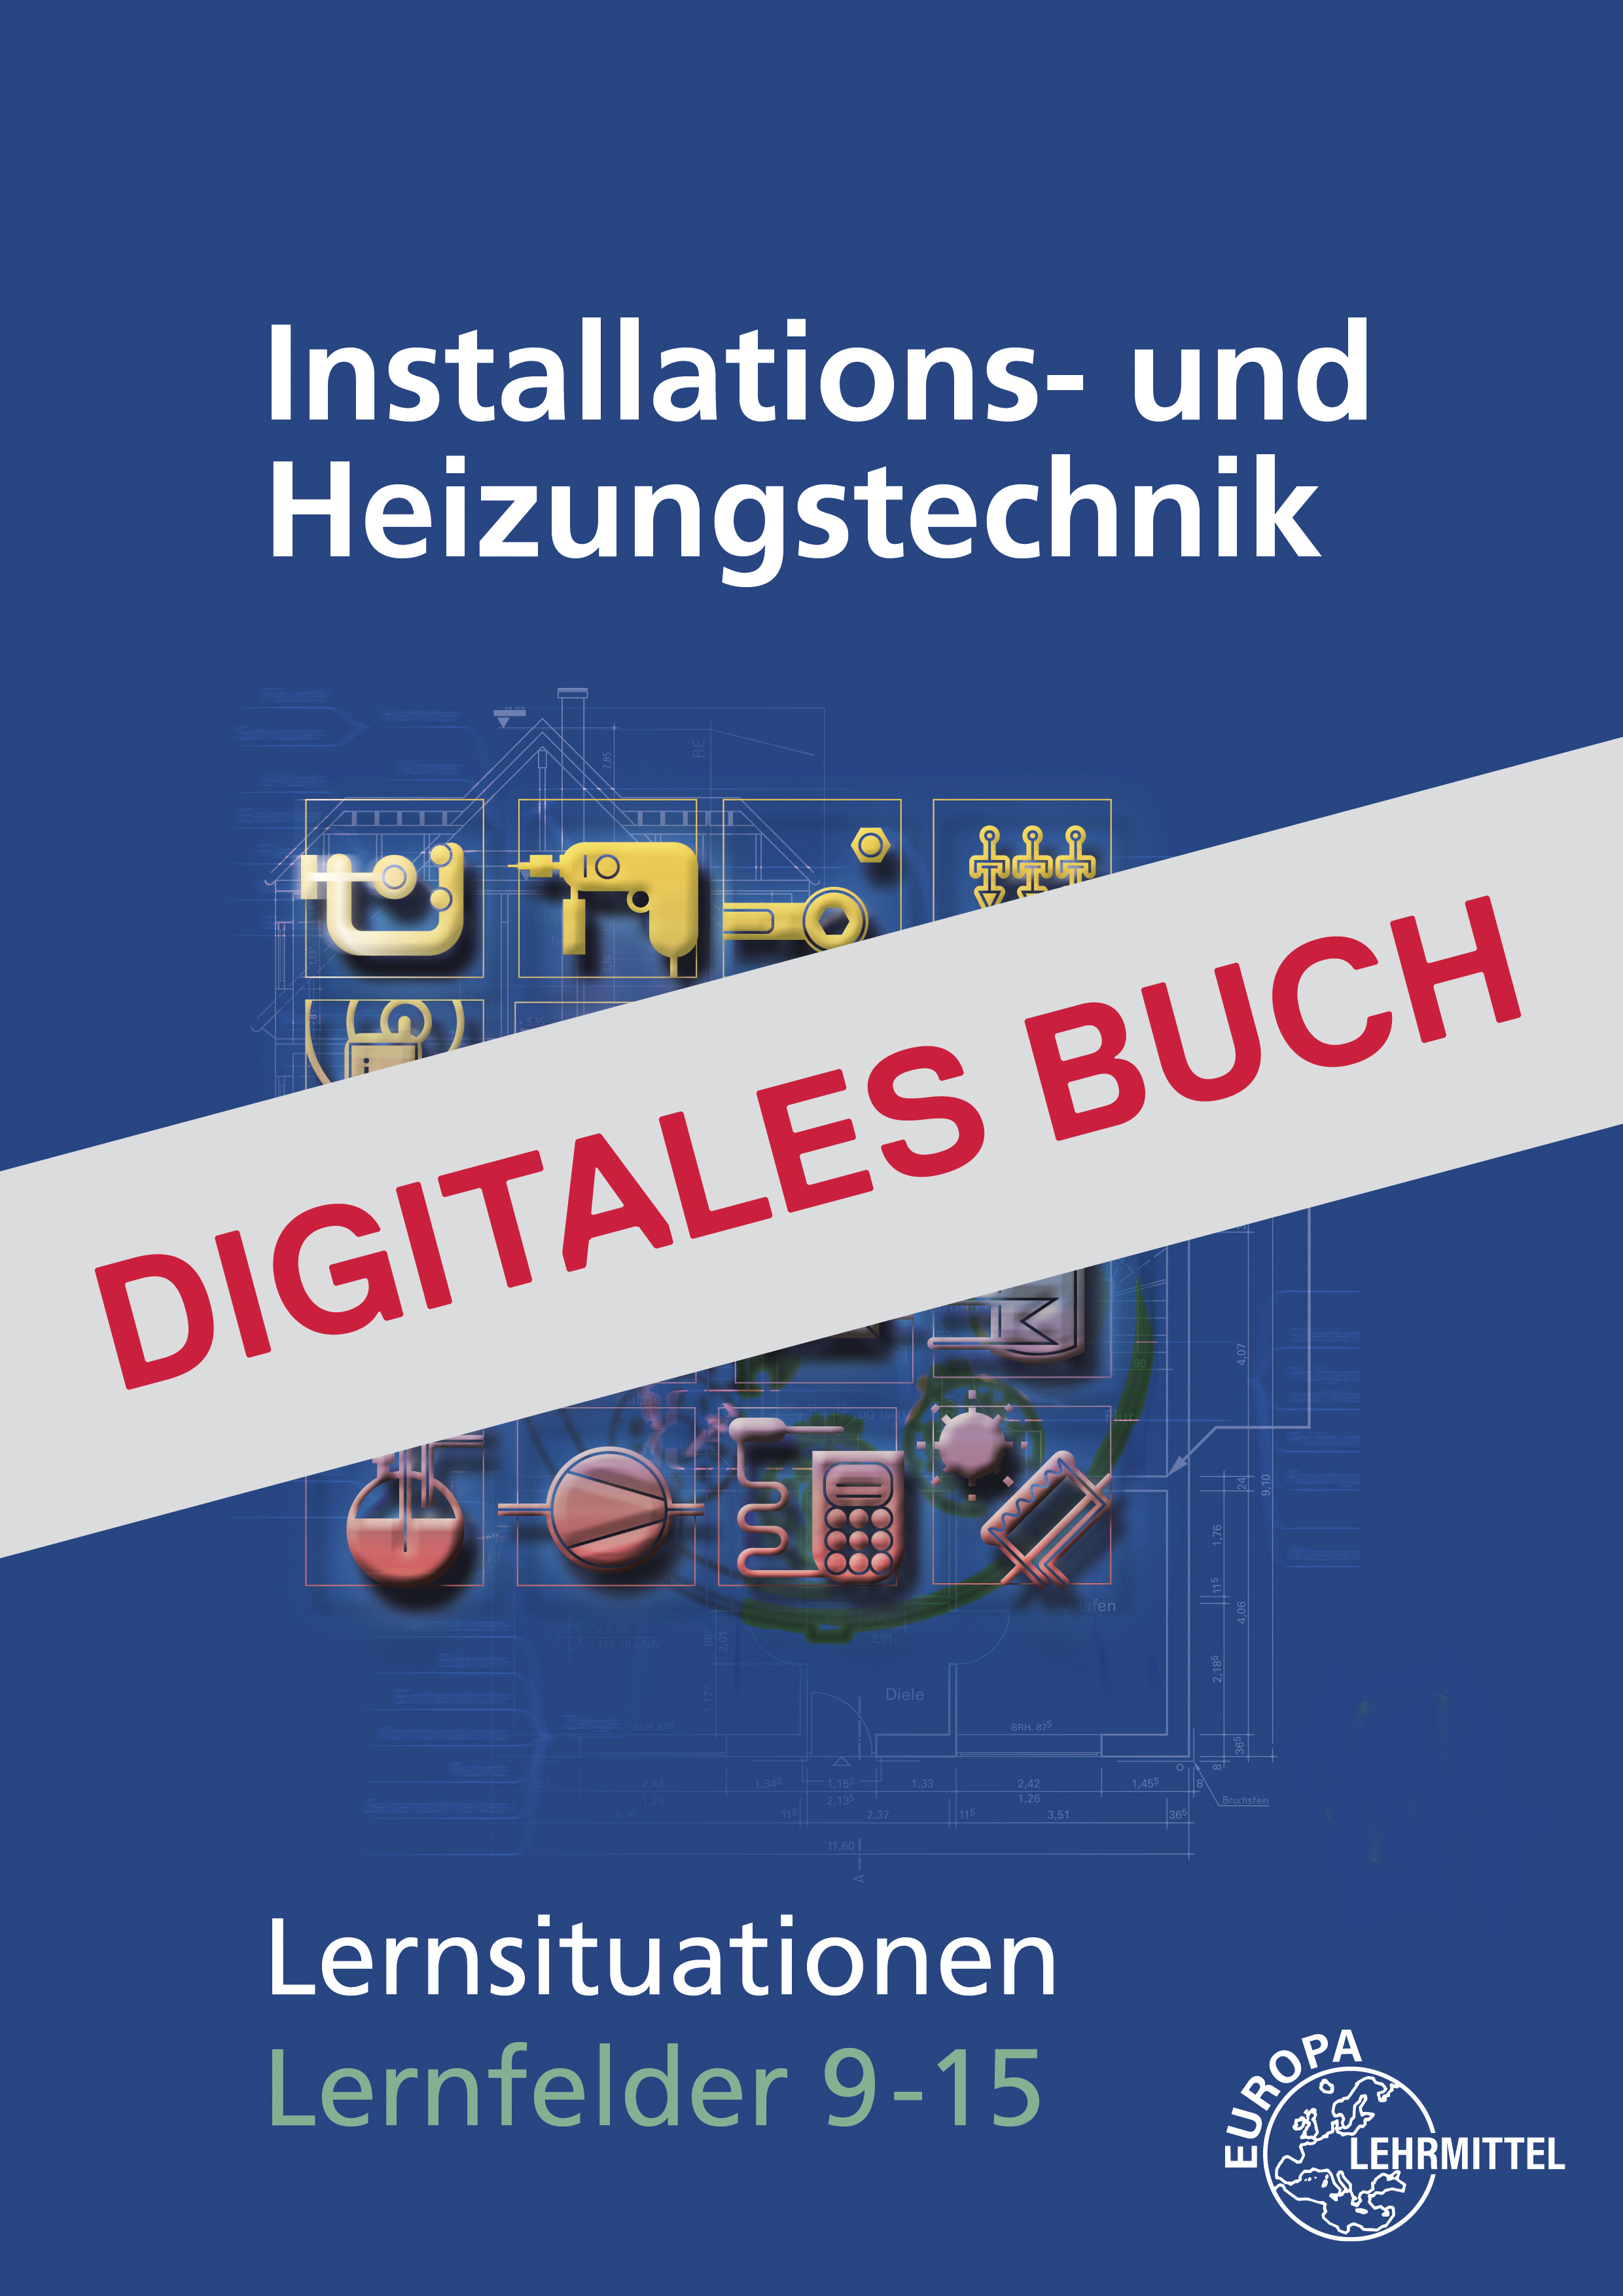 Installations- und Heizungstechnik Lernsituationen LF 9-15 - Digitales Buch